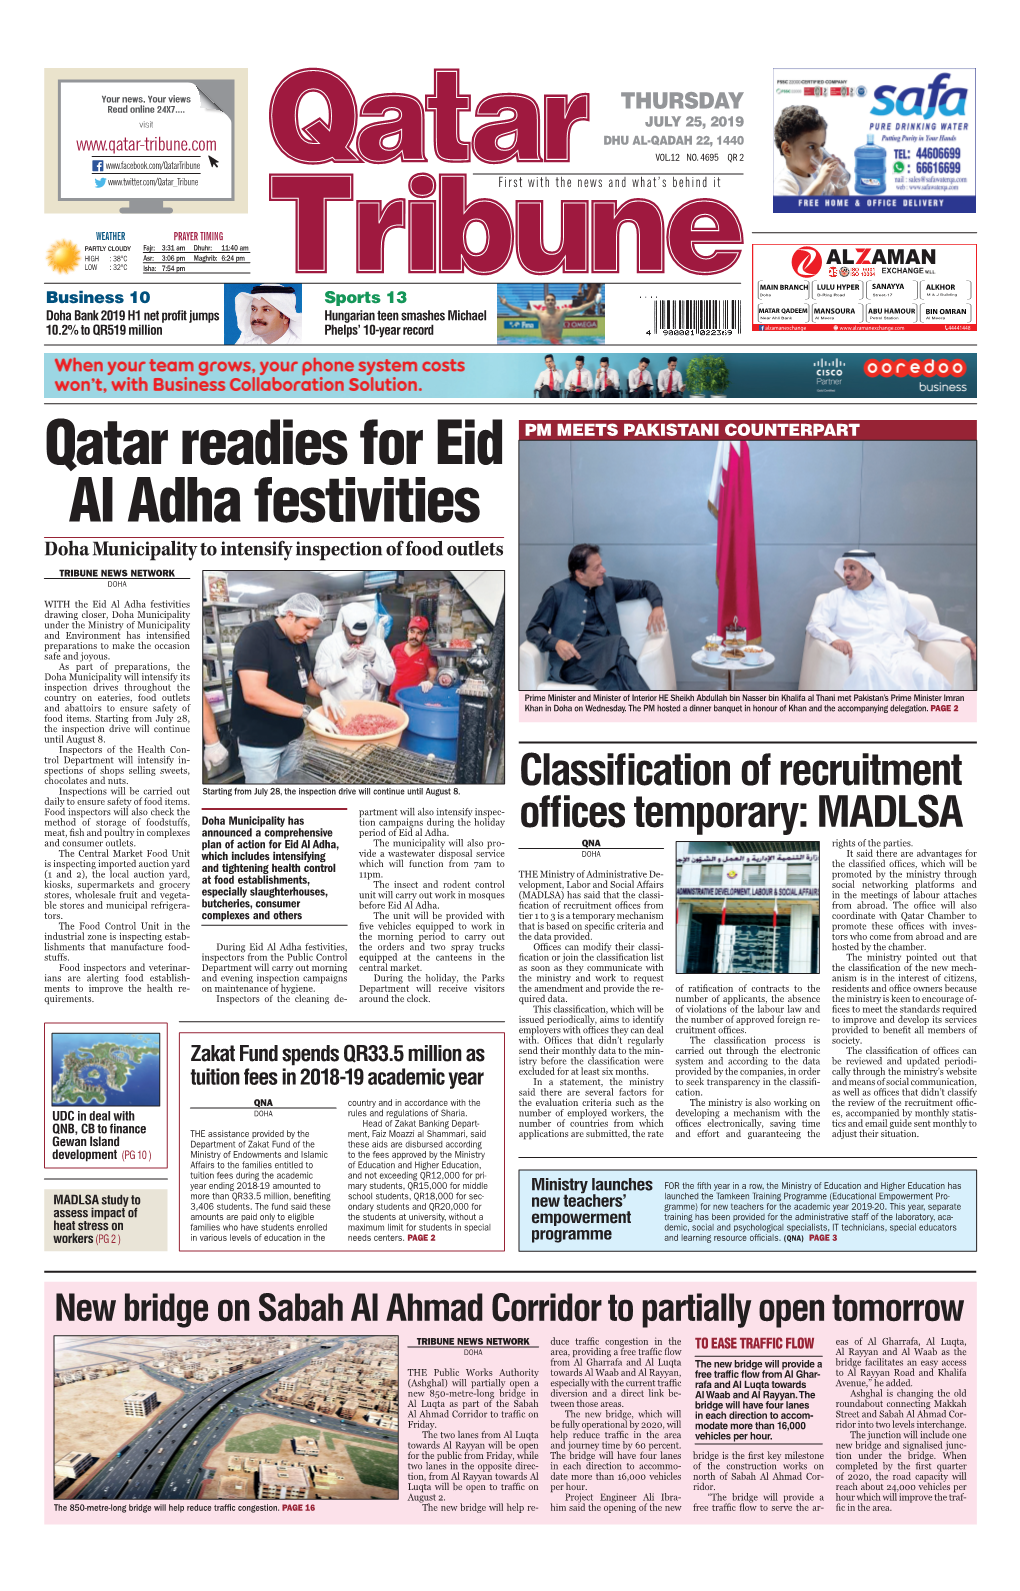 Qatar Readies for Eid Al Adha Festivities